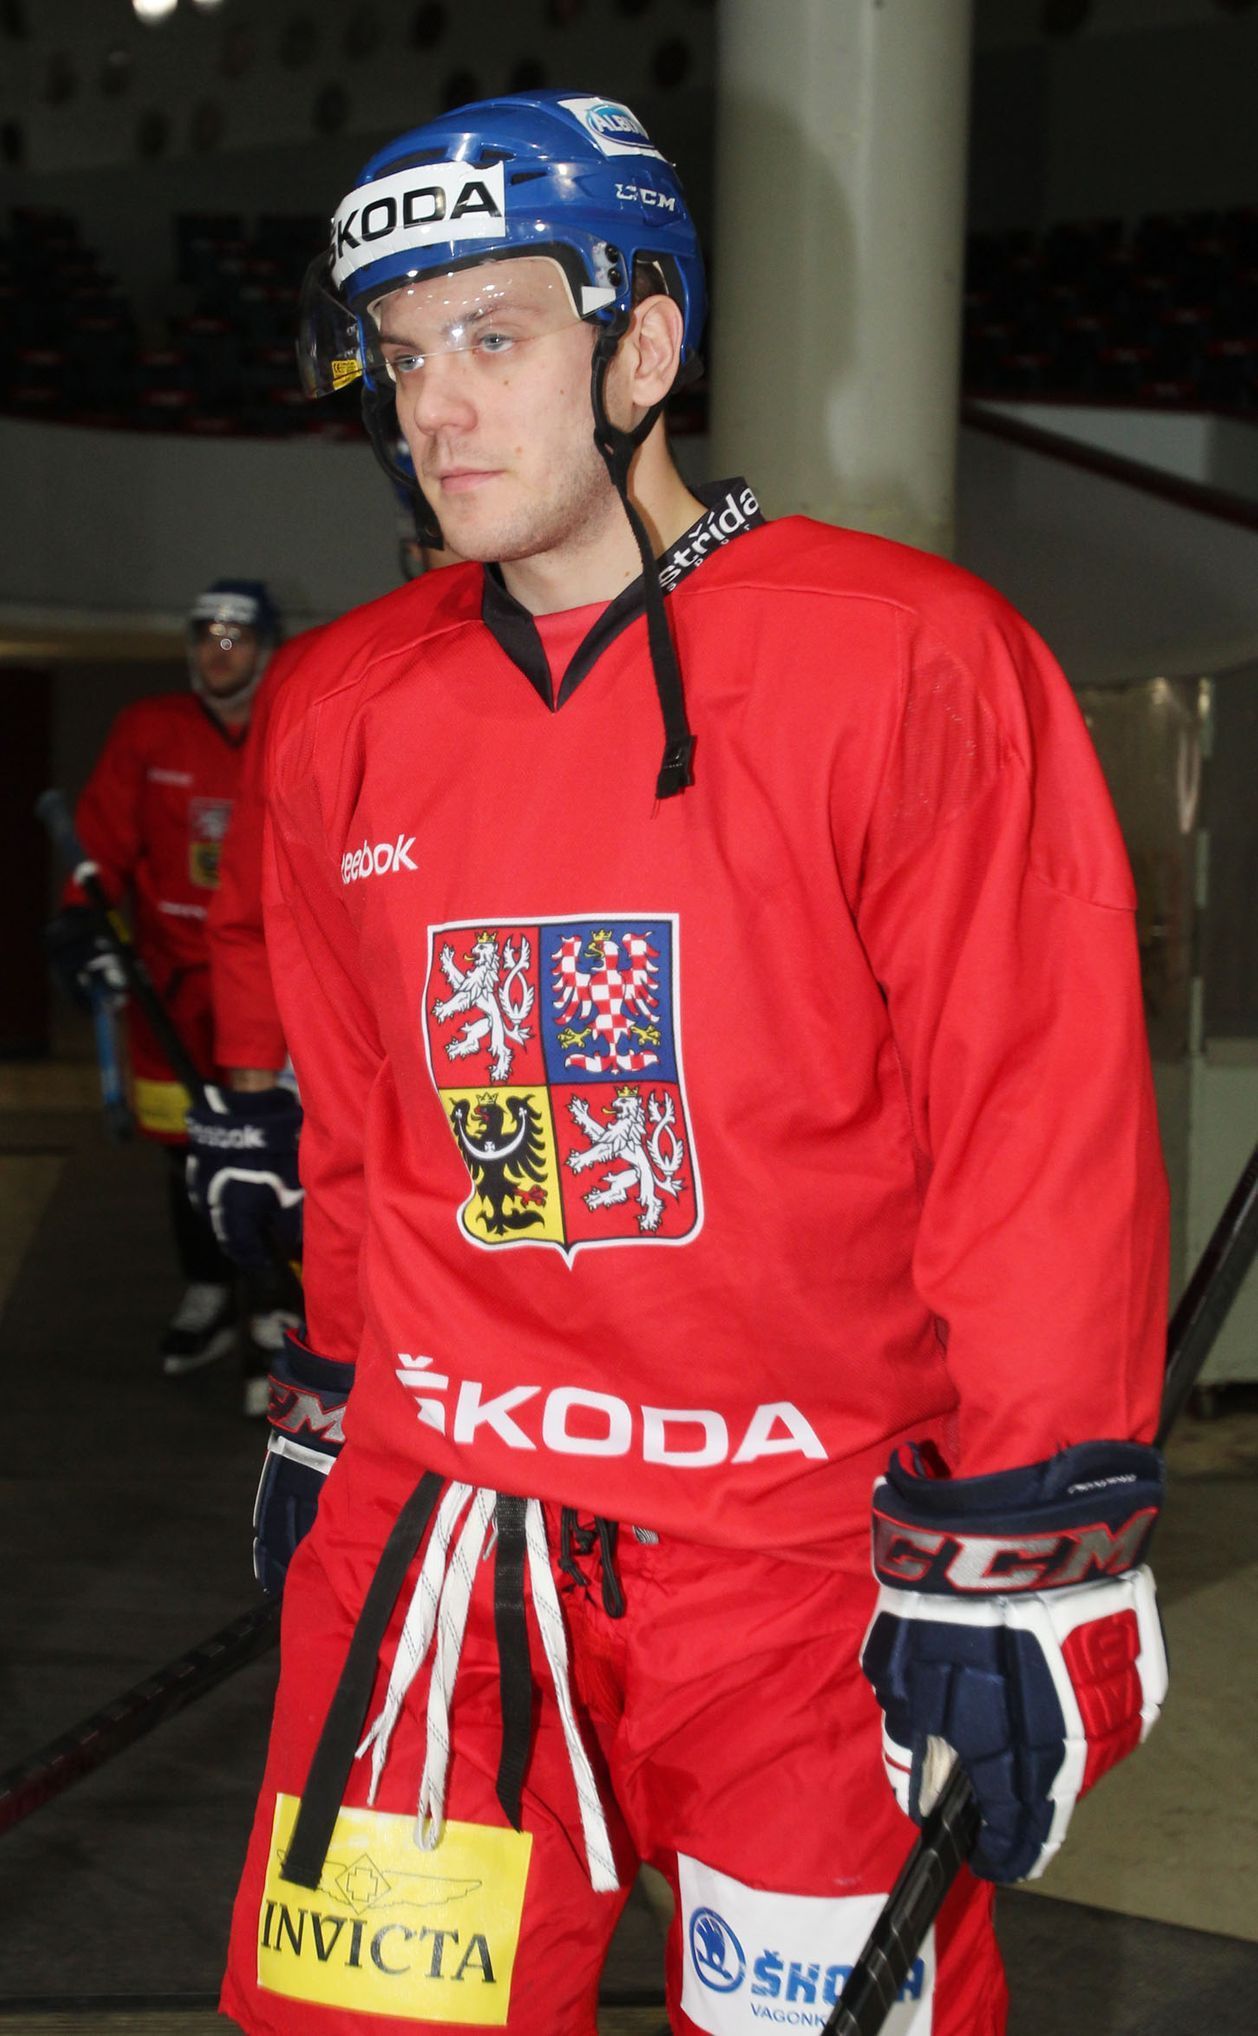 Trénink hokejové reprezenatace: Tomáš Rachůnek